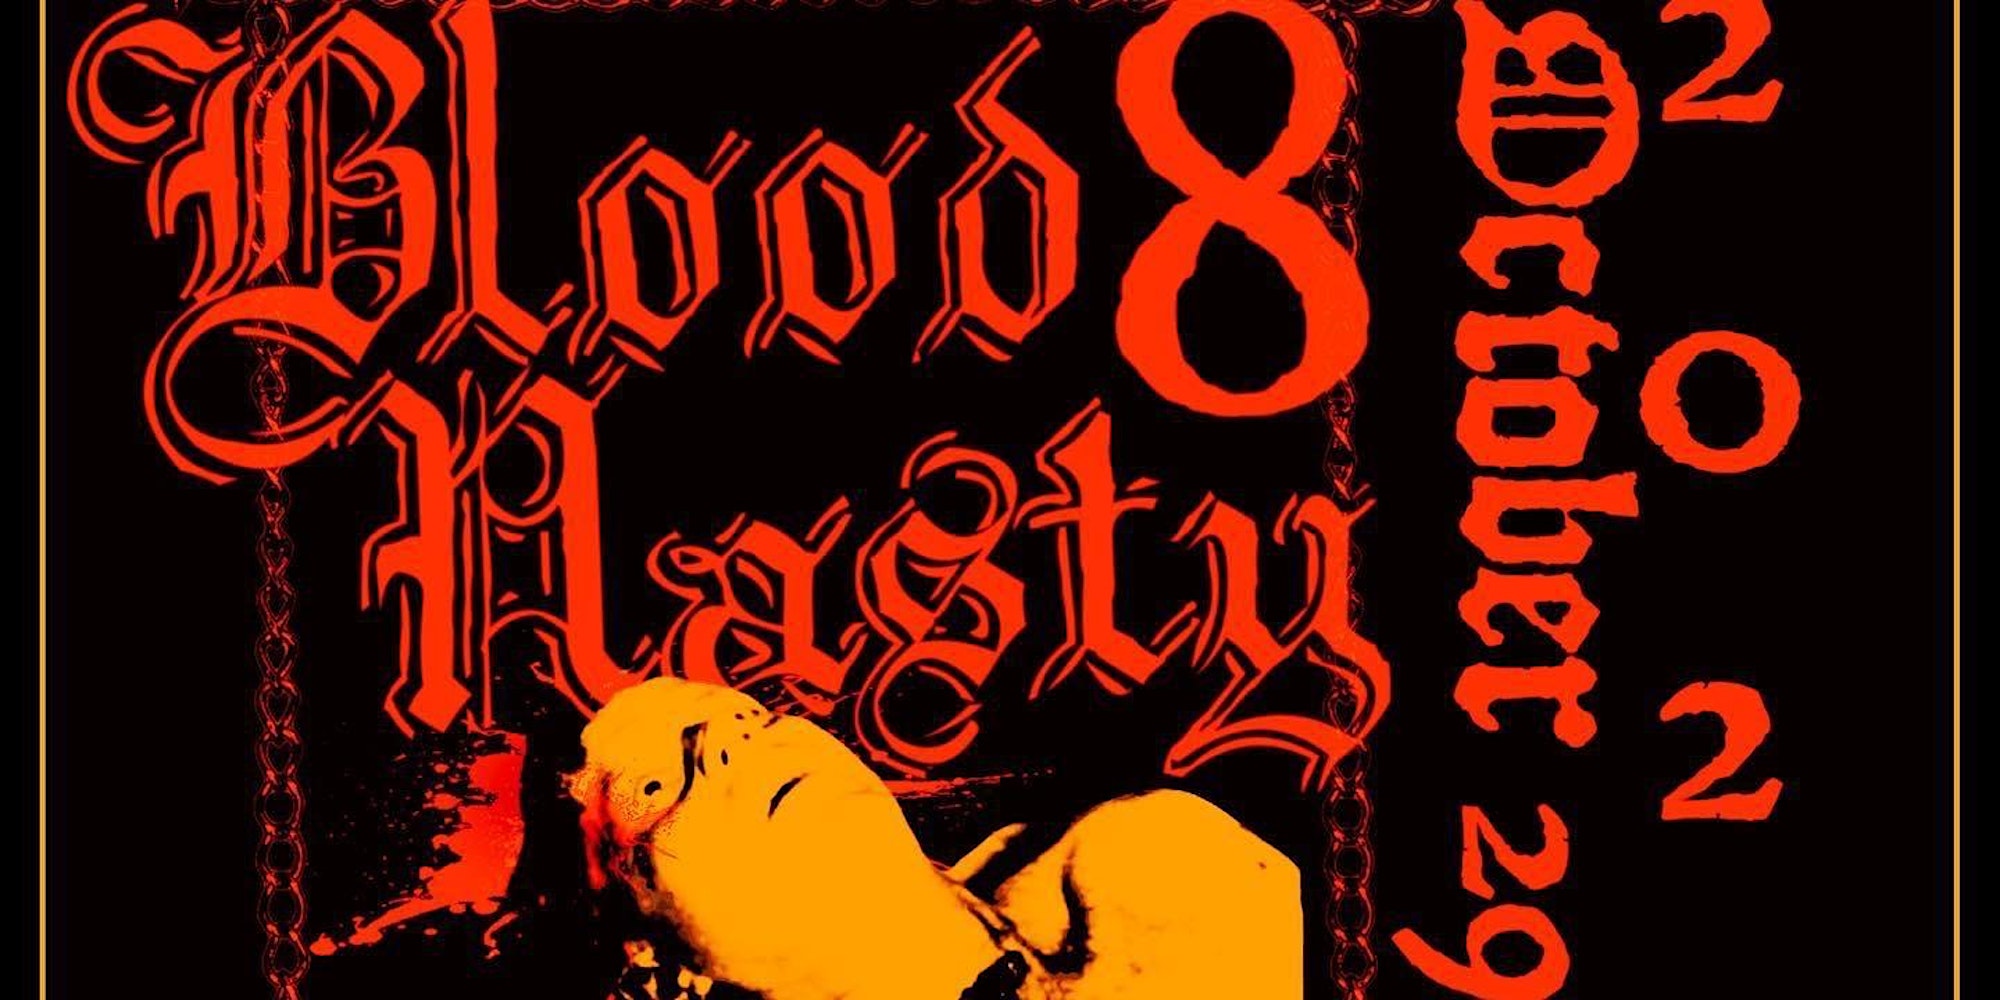 Blood Nasty 8/ Naga Brujo/The Boleys/The Dead Coats/Transy Warhol